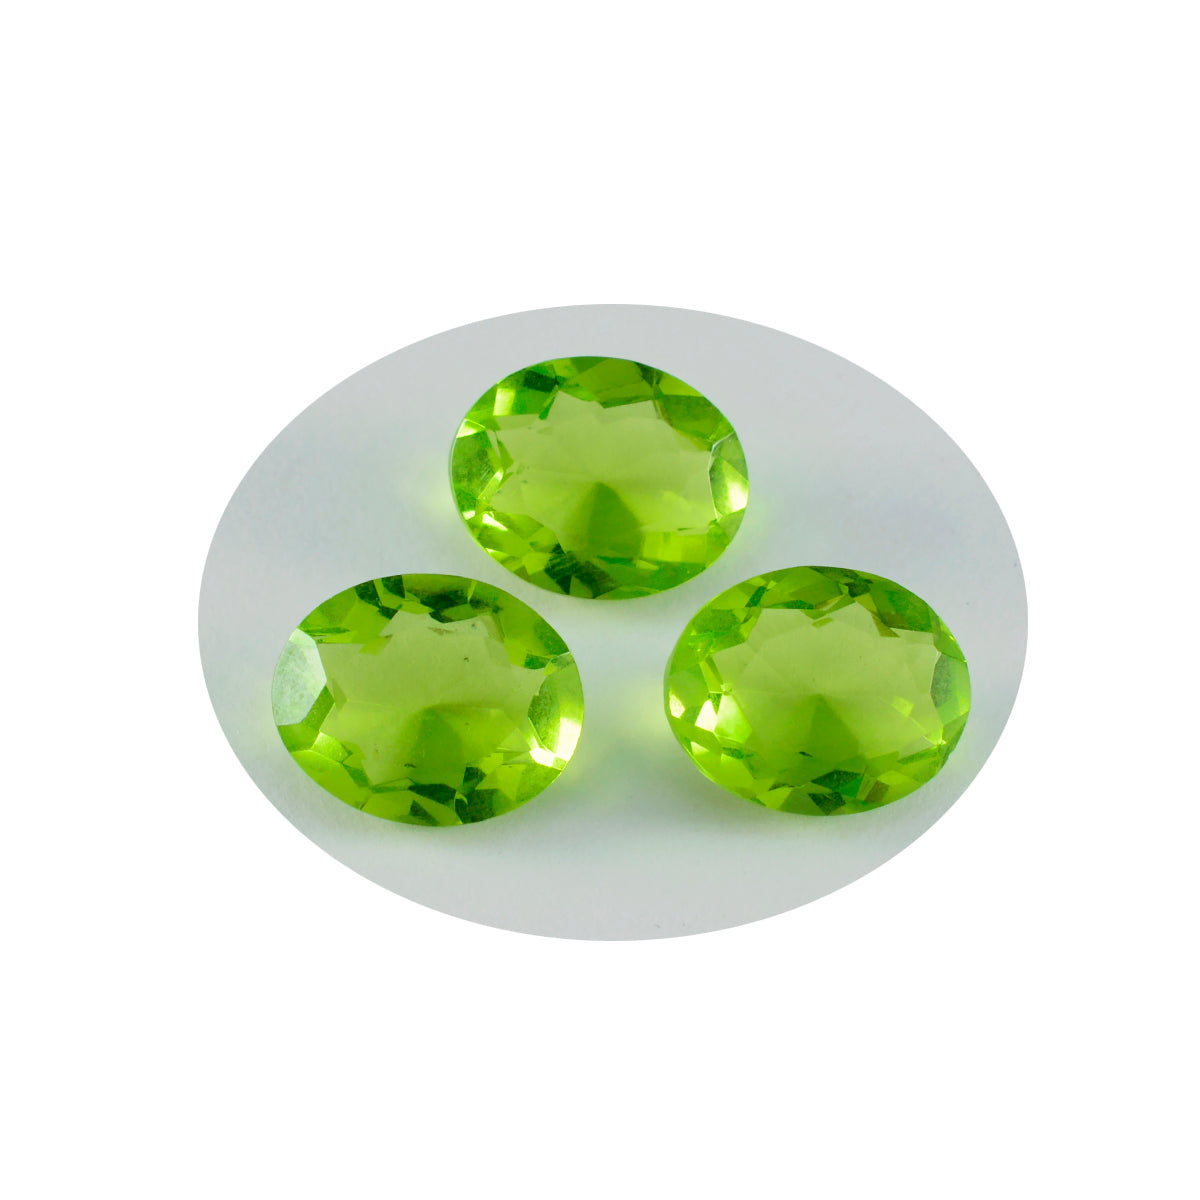 riyogems 1шт зеленый перидот cz граненый 9x11 мм овальной формы красивые качественные драгоценные камни